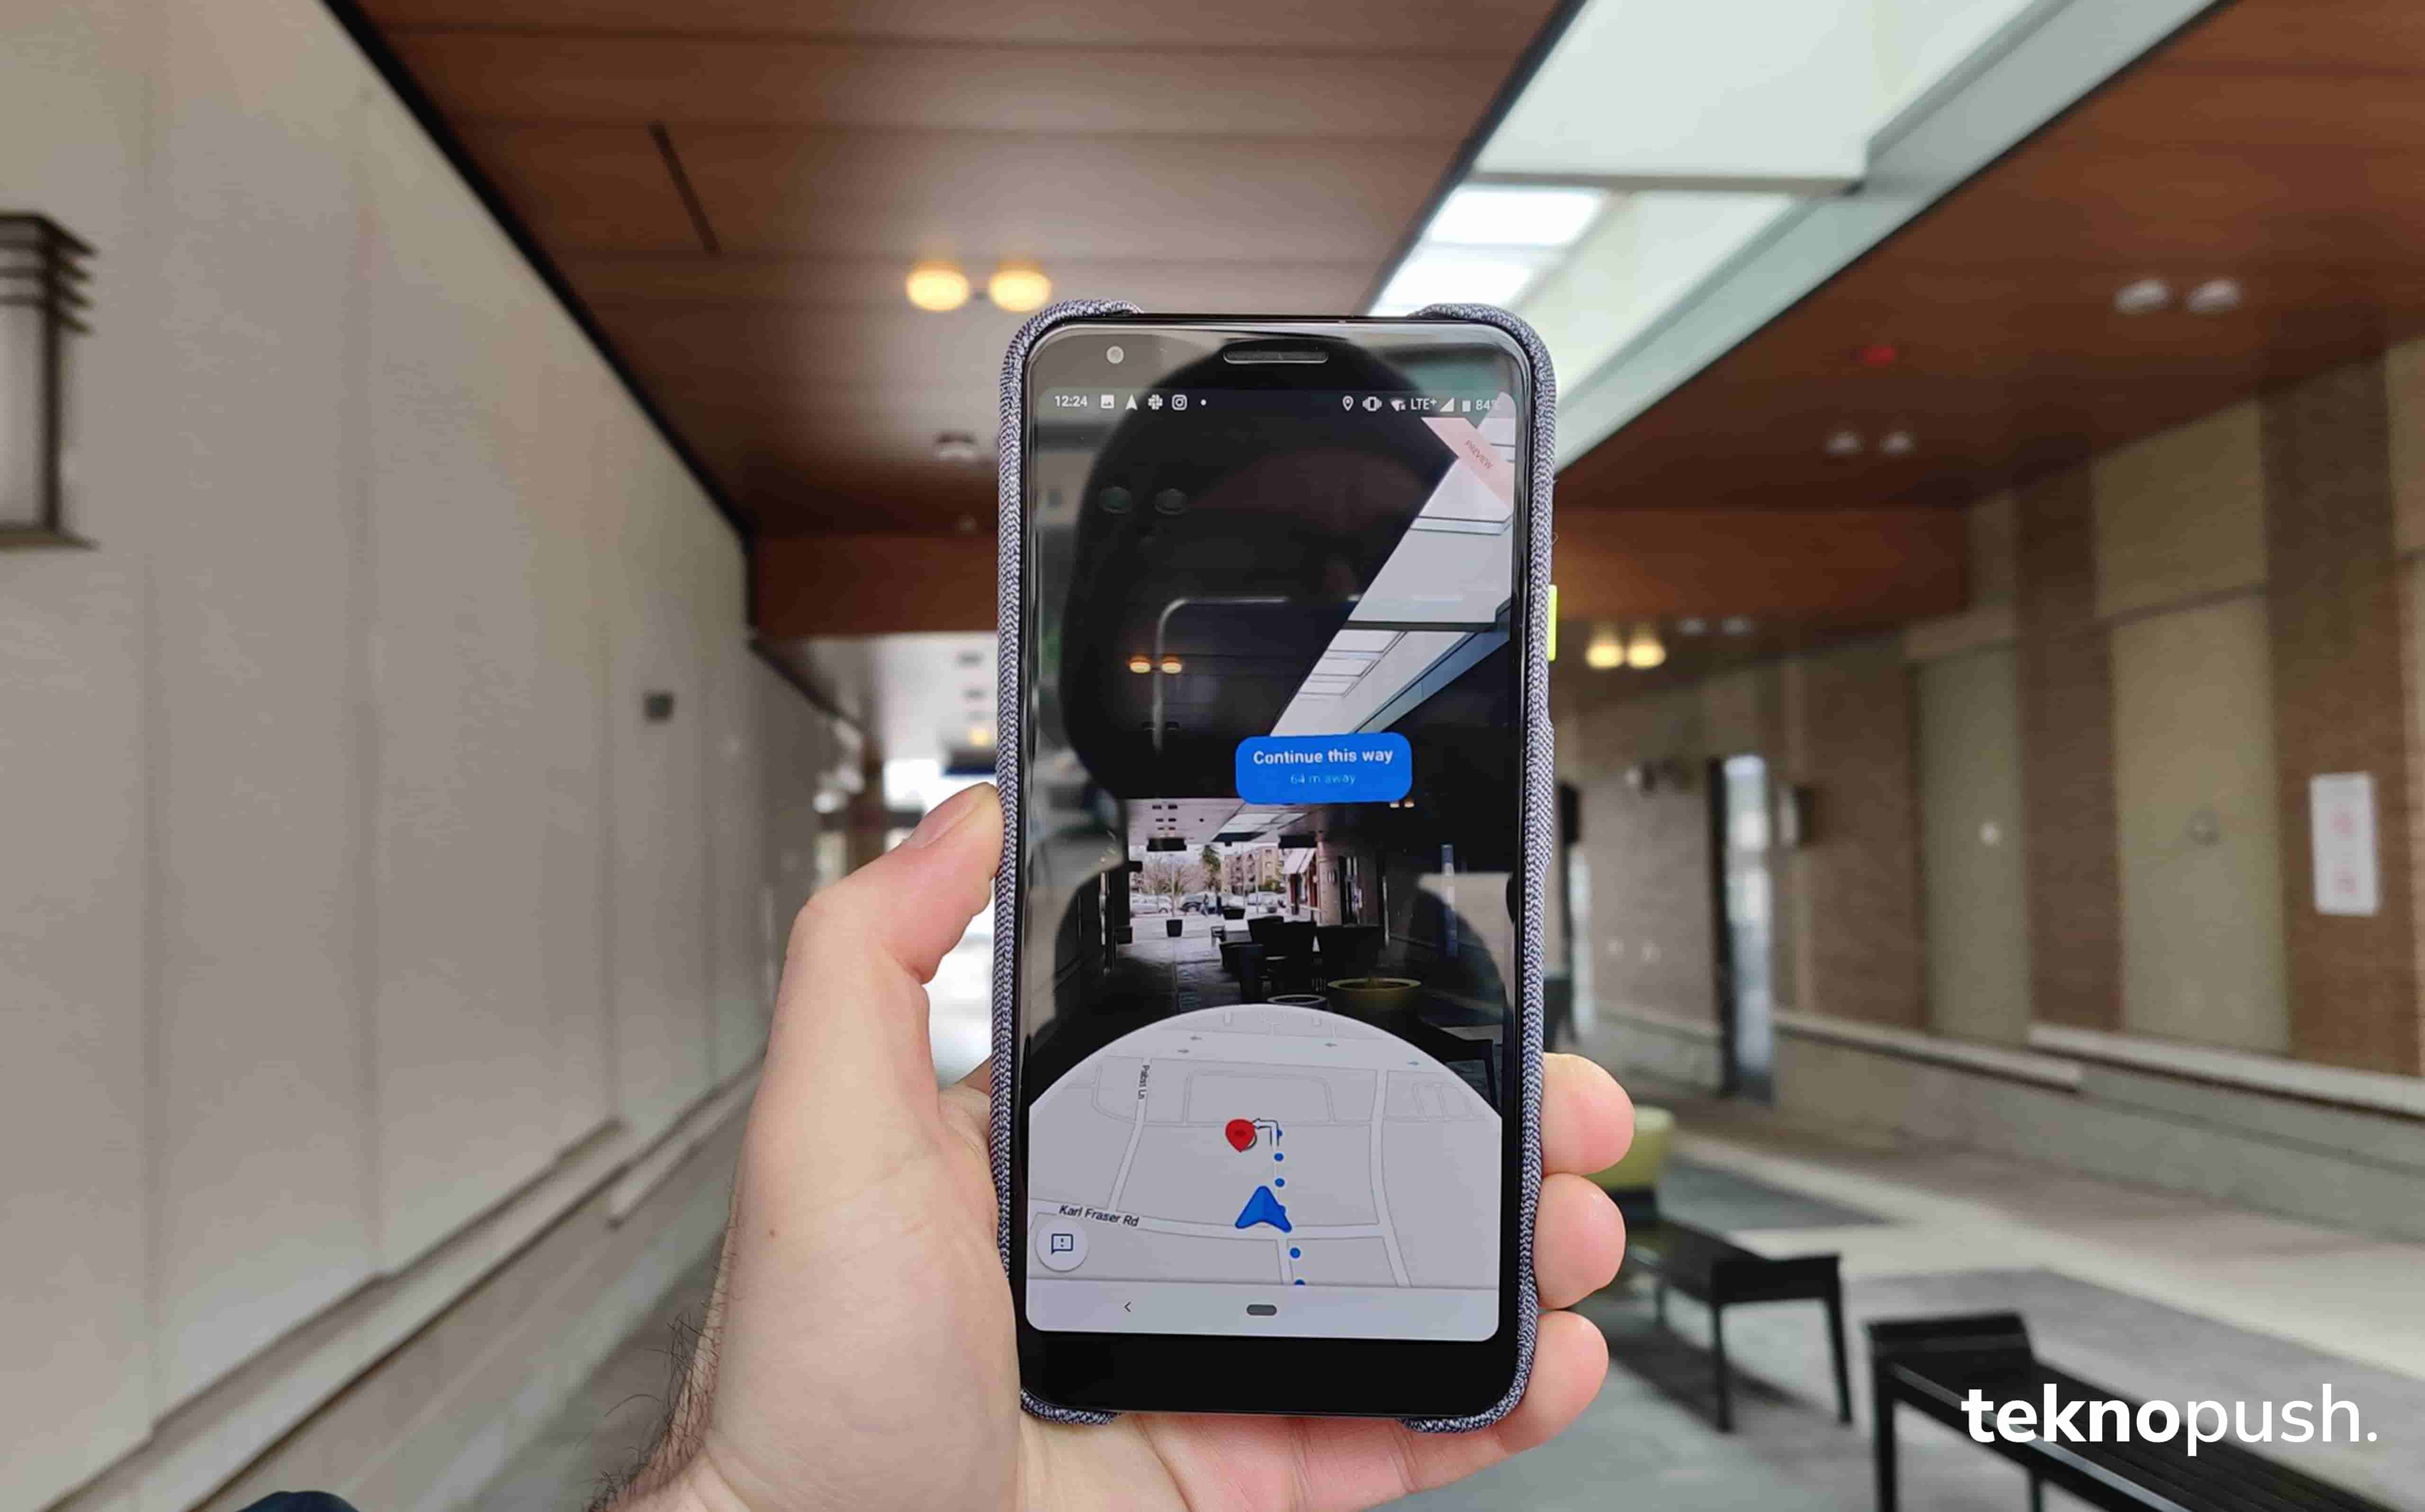 Google Haritalara 4 Yeni Özellik Geldi: Live View’da Arama, İstediğiniz Yemeğe Göre Restoran Bulma ve Dahası